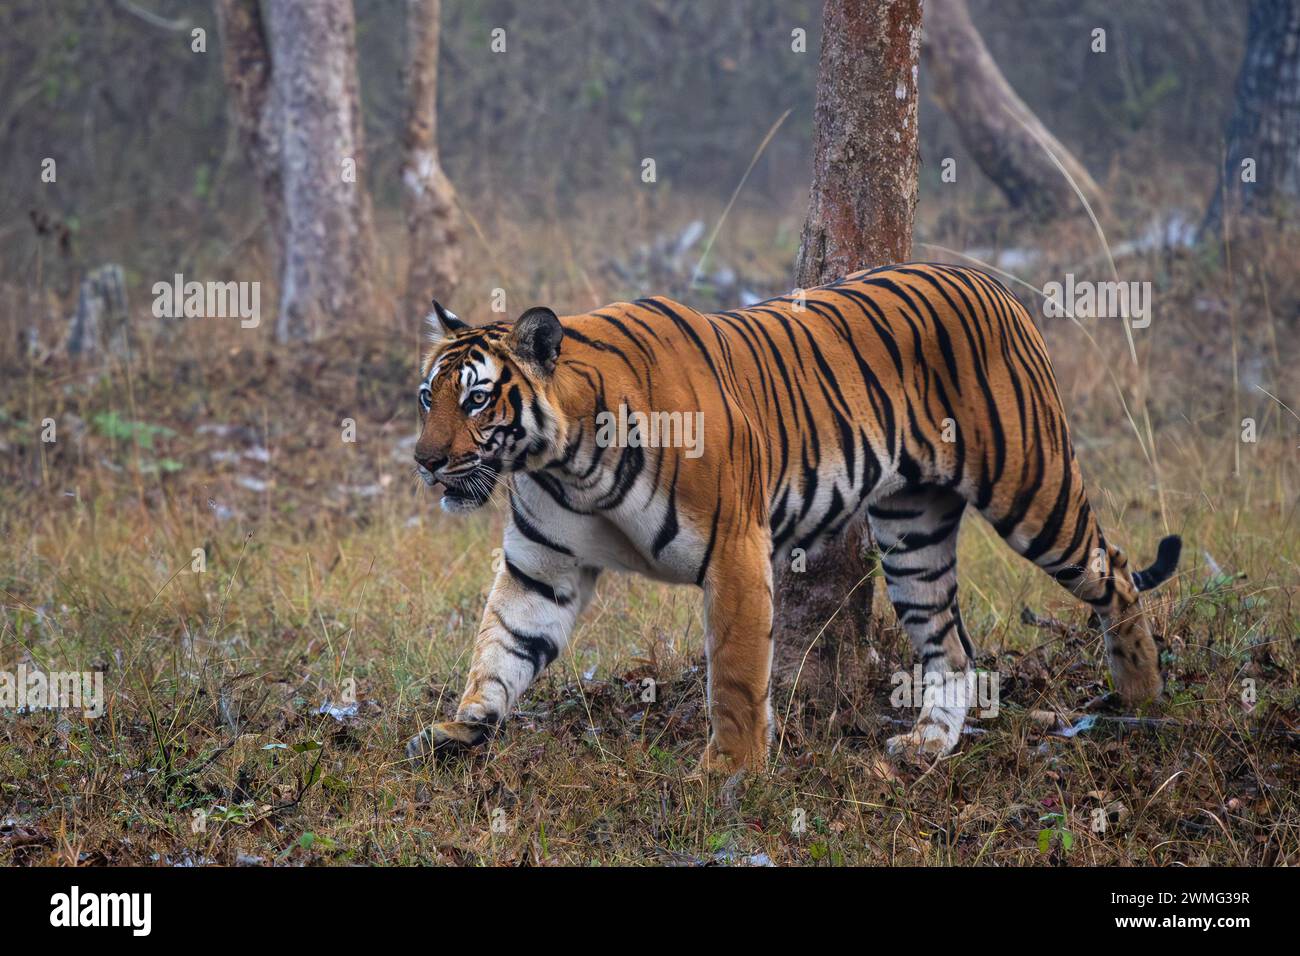 Bengalischer Tiger - Panthera Tigris tigris, schöne farbige große Katze aus südasiatischen Wäldern und Wäldern, Nagarahole Tiger Reserve, Indien. Stockfoto